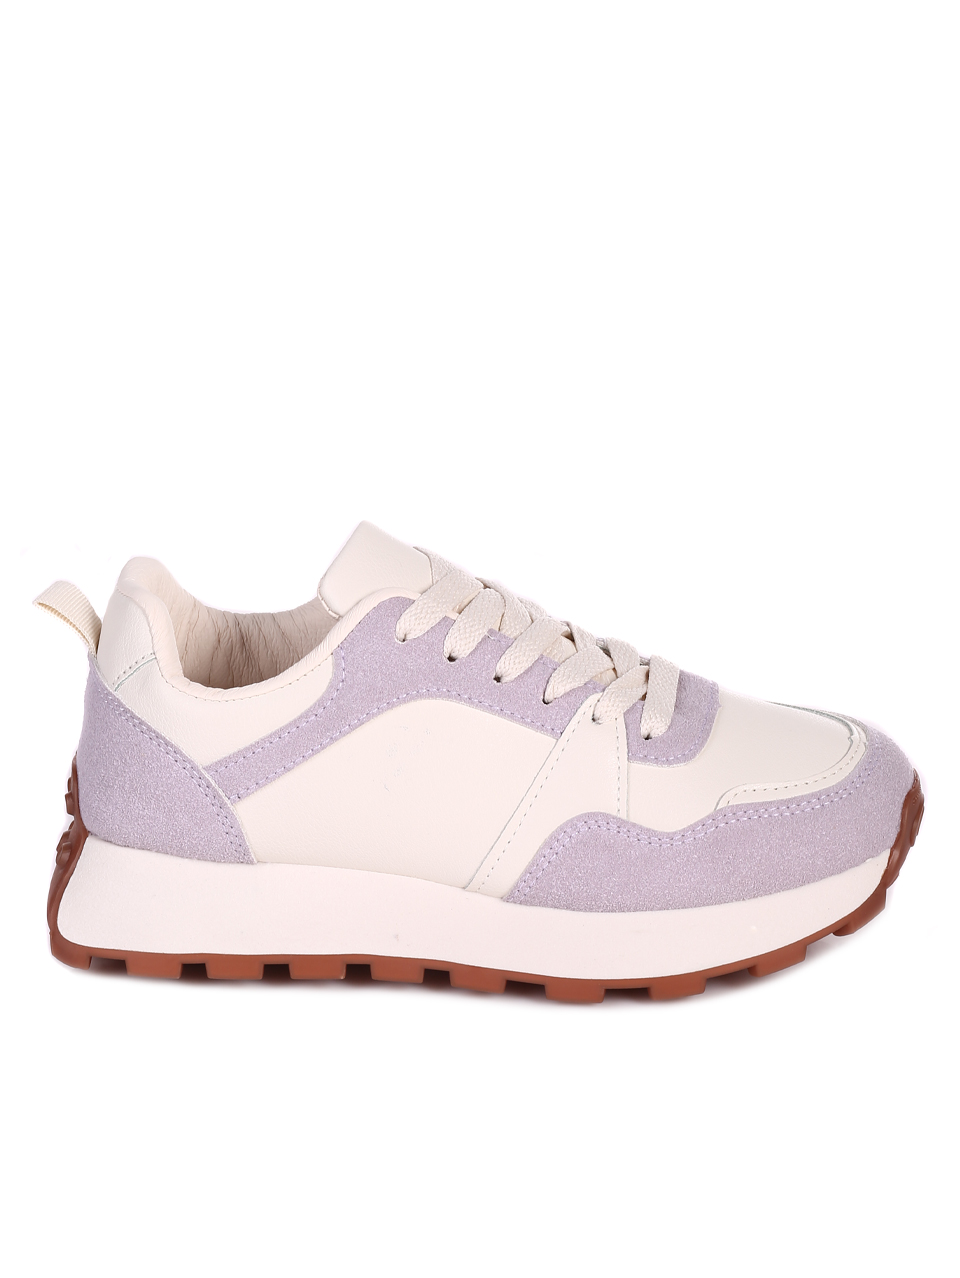 Ежедневни дамски комфортни обувки в лилаво и бежово 3U-23057 purple